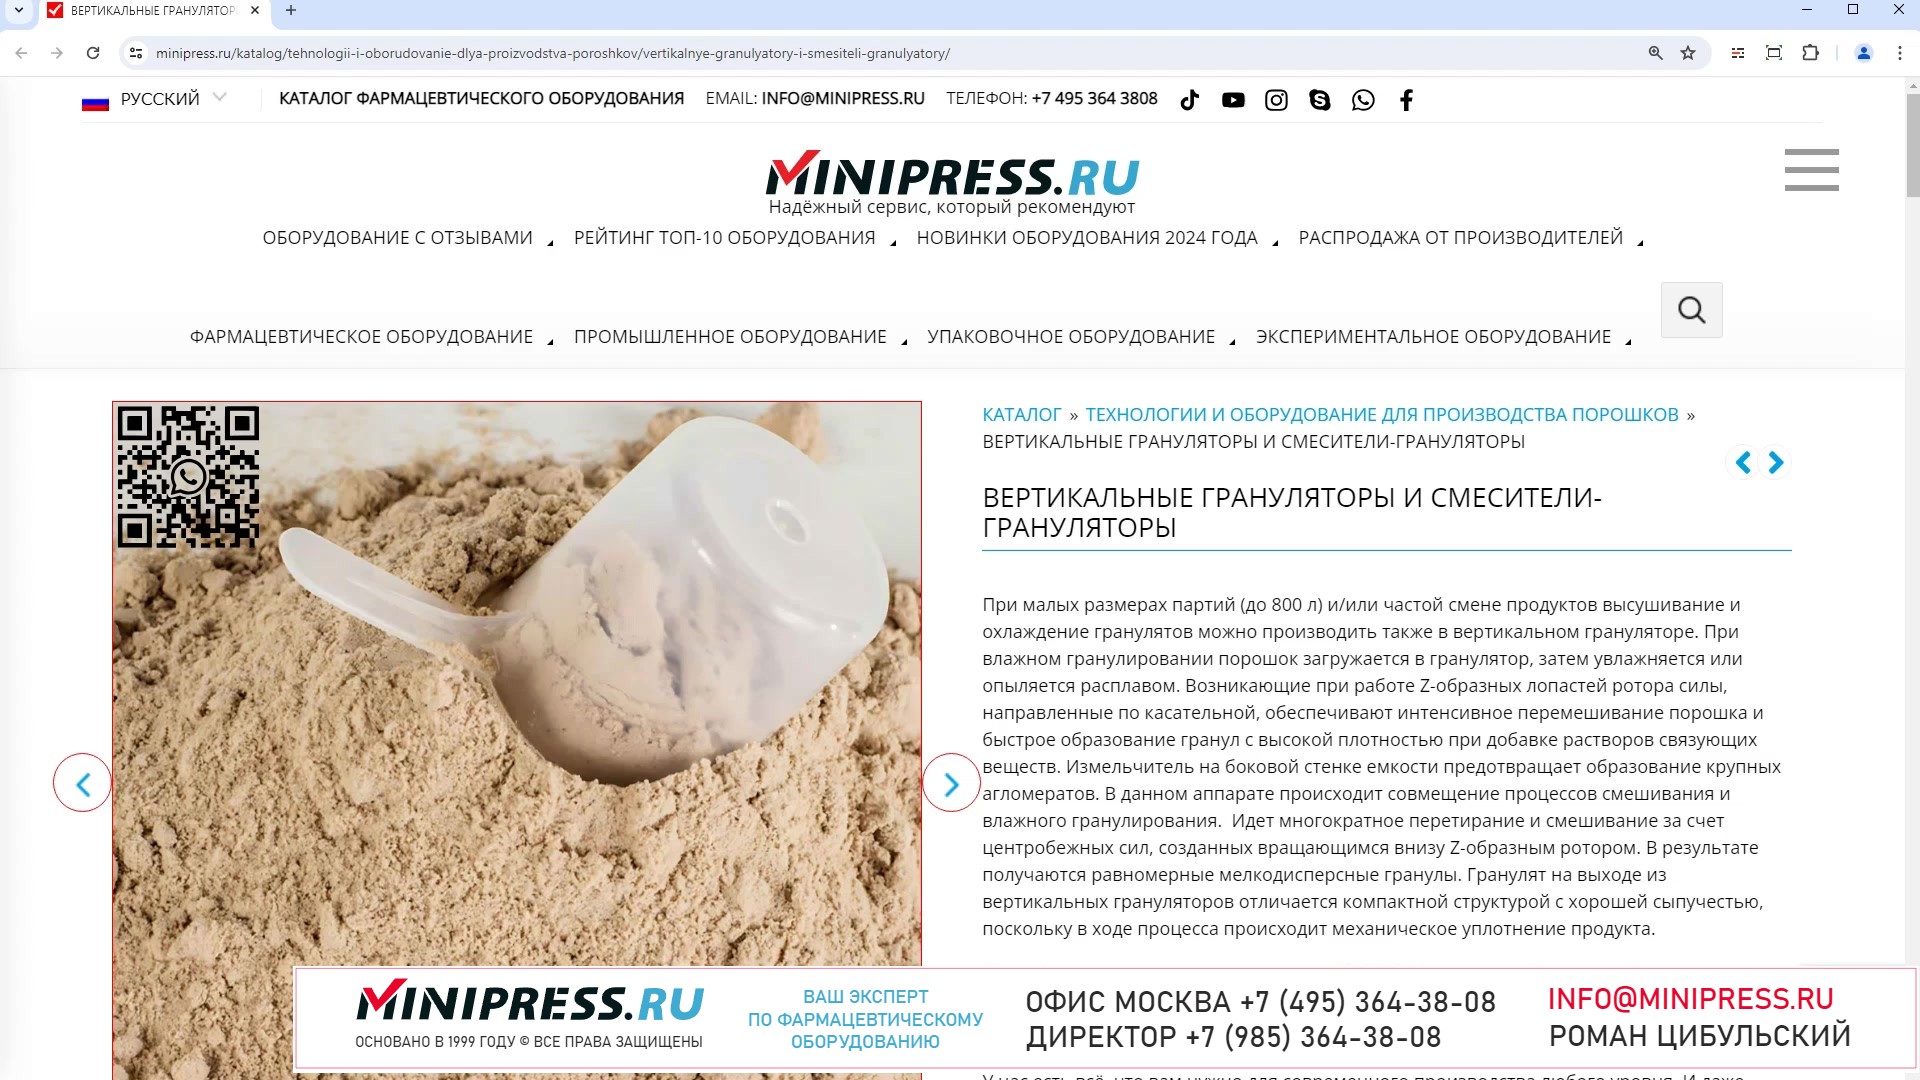 Minipress.ru Вертикальные грануляторы и смесители-грануляторы